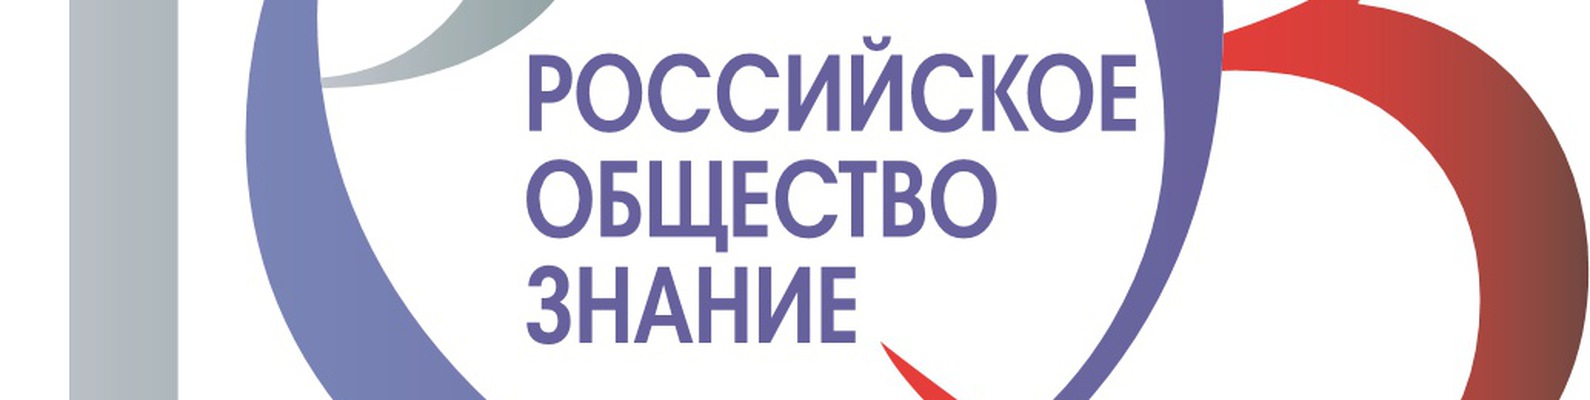 Рос общество знание. Российское общество знание. Российское общество знан е. Российское общество знание эмблема. Всероссийское общество знание логотип.